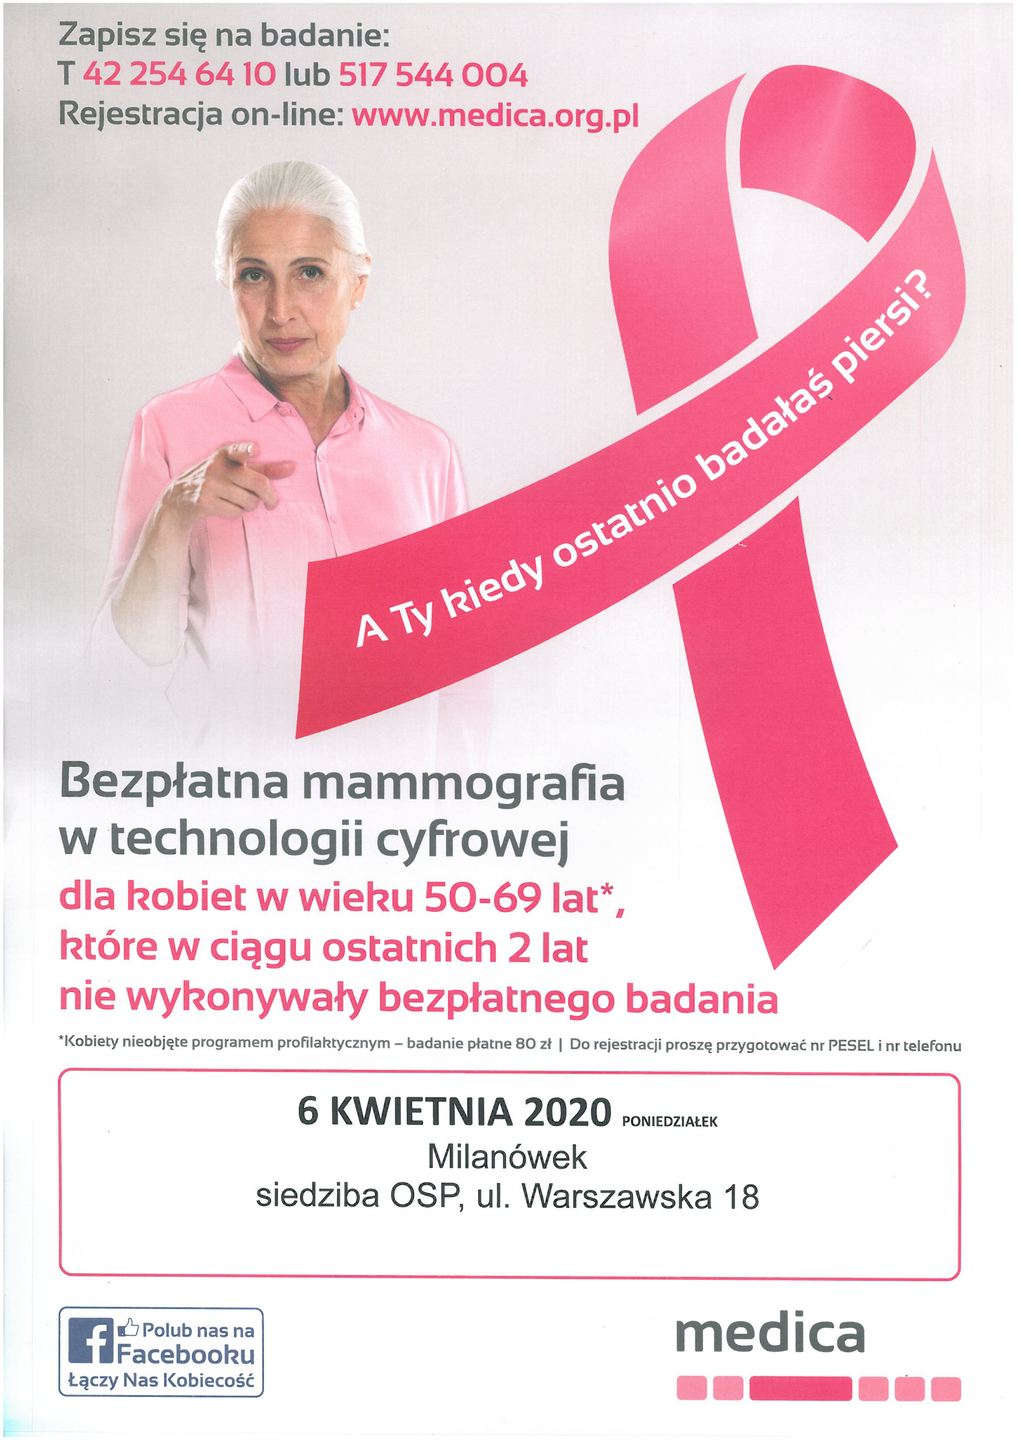 Plakat promujący bezpłatną mammografię w technologii cyfrowej